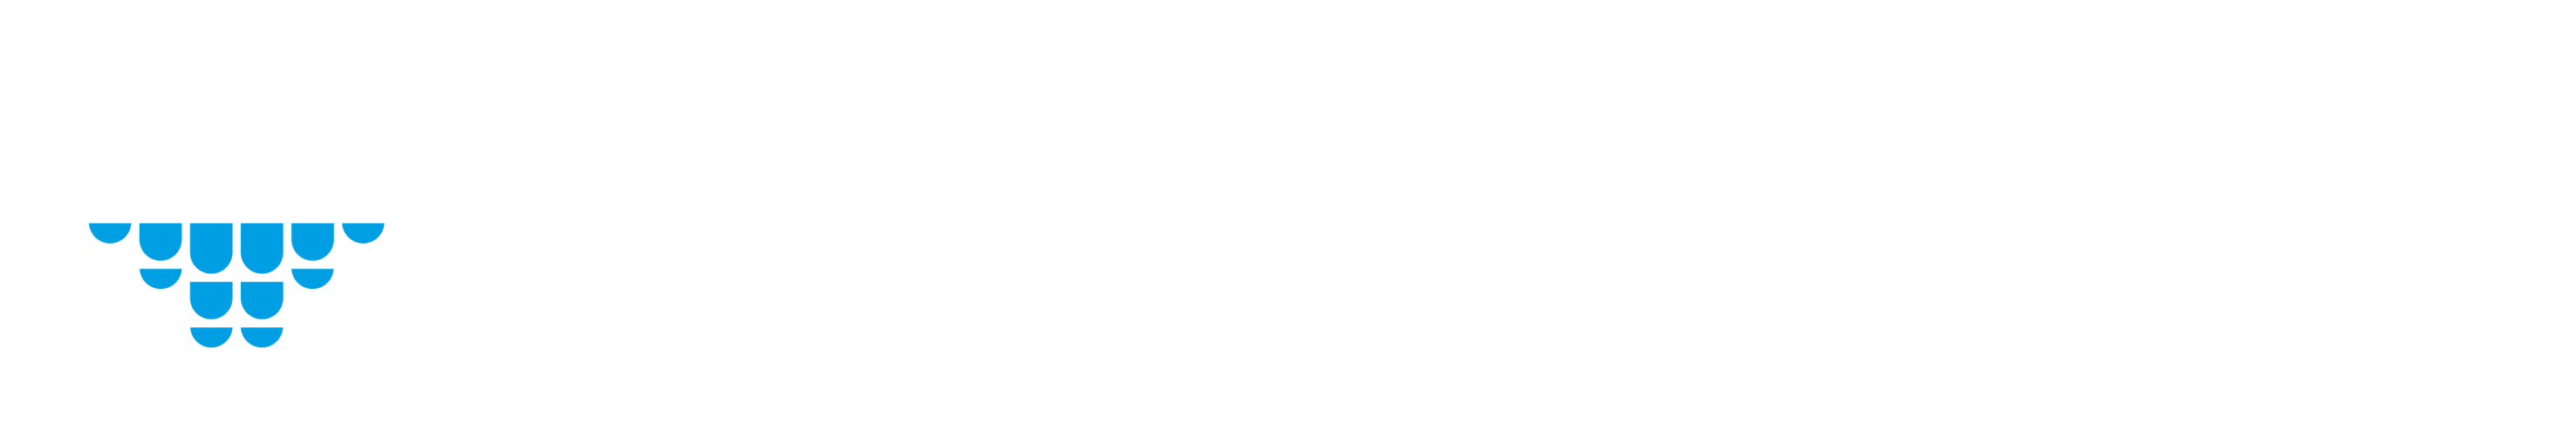 Corus consulting logo